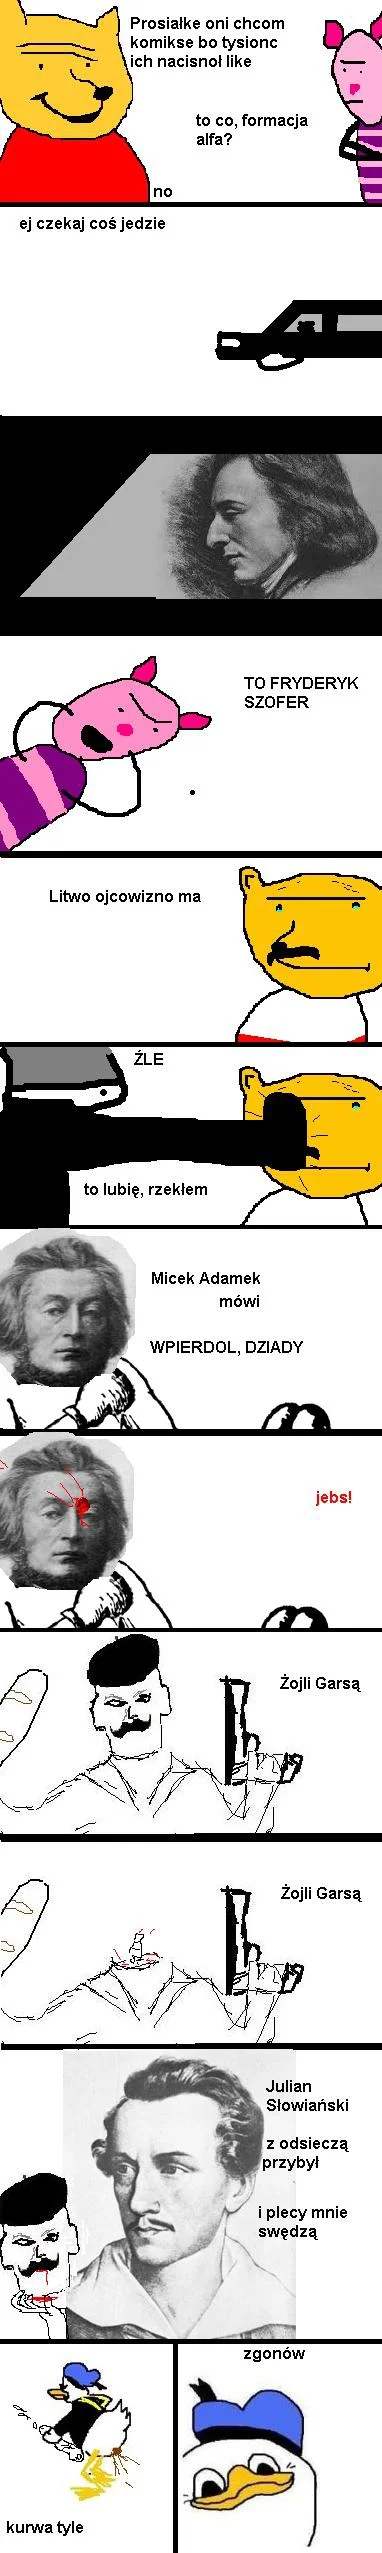 Wyszynkowski - Fryderyk Chopin??? chyba Fryderyk Szofer!